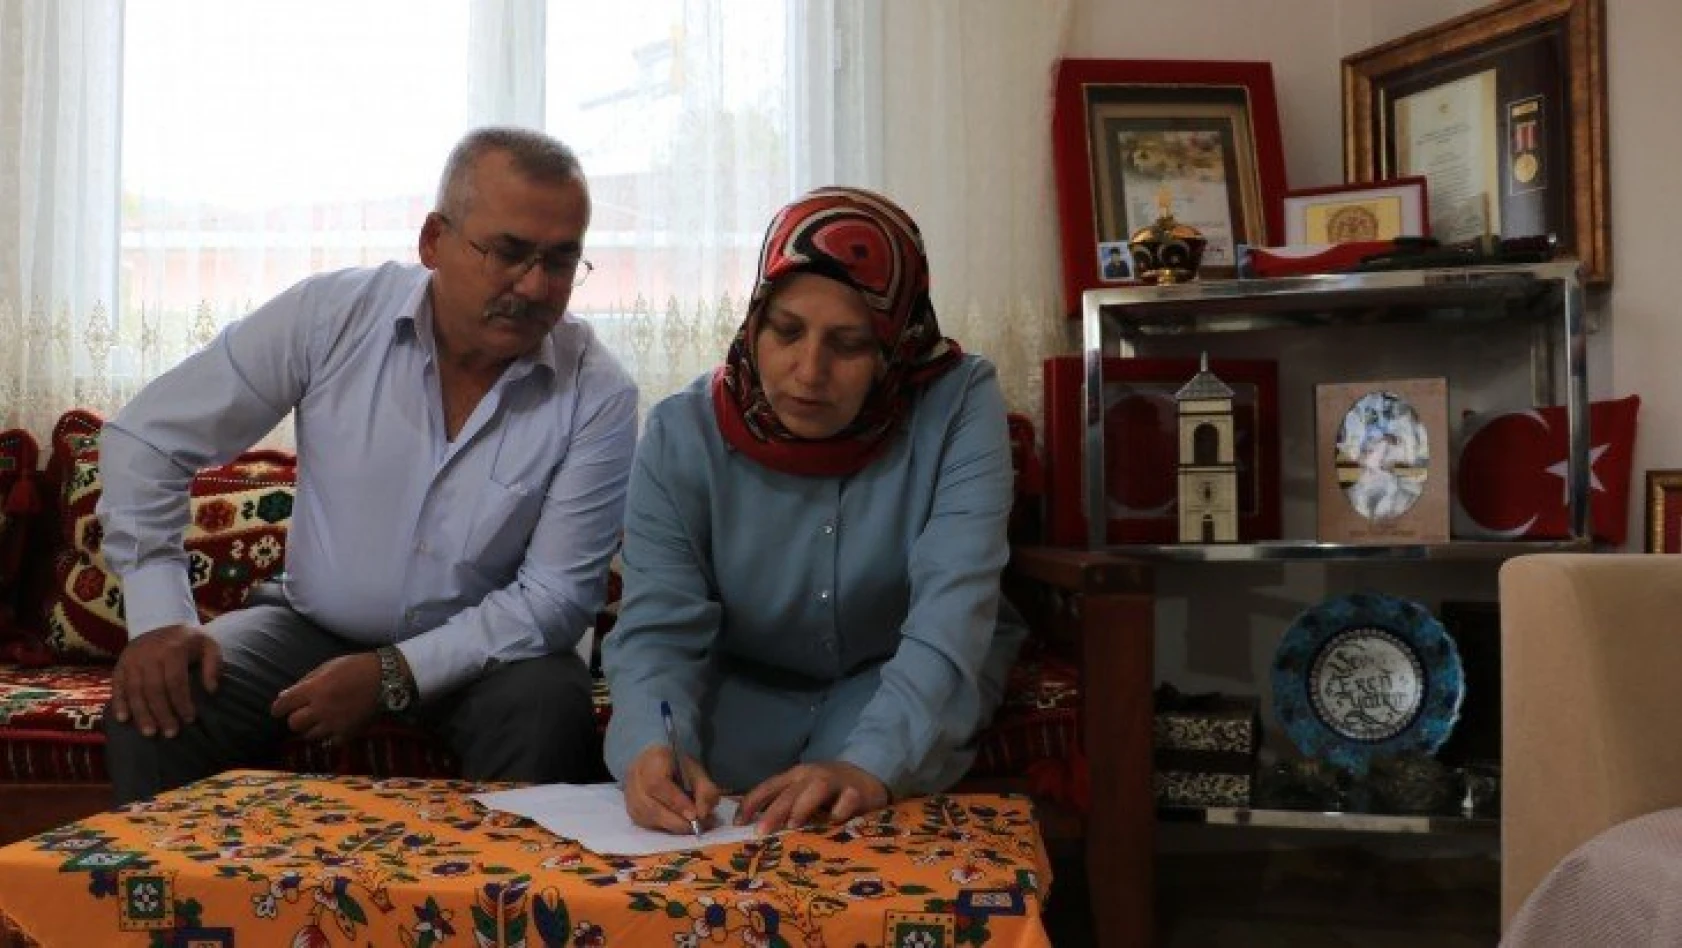 'Can Azerbaycan'a mektup' kampanyasına ilk mektup şehit ailesinden